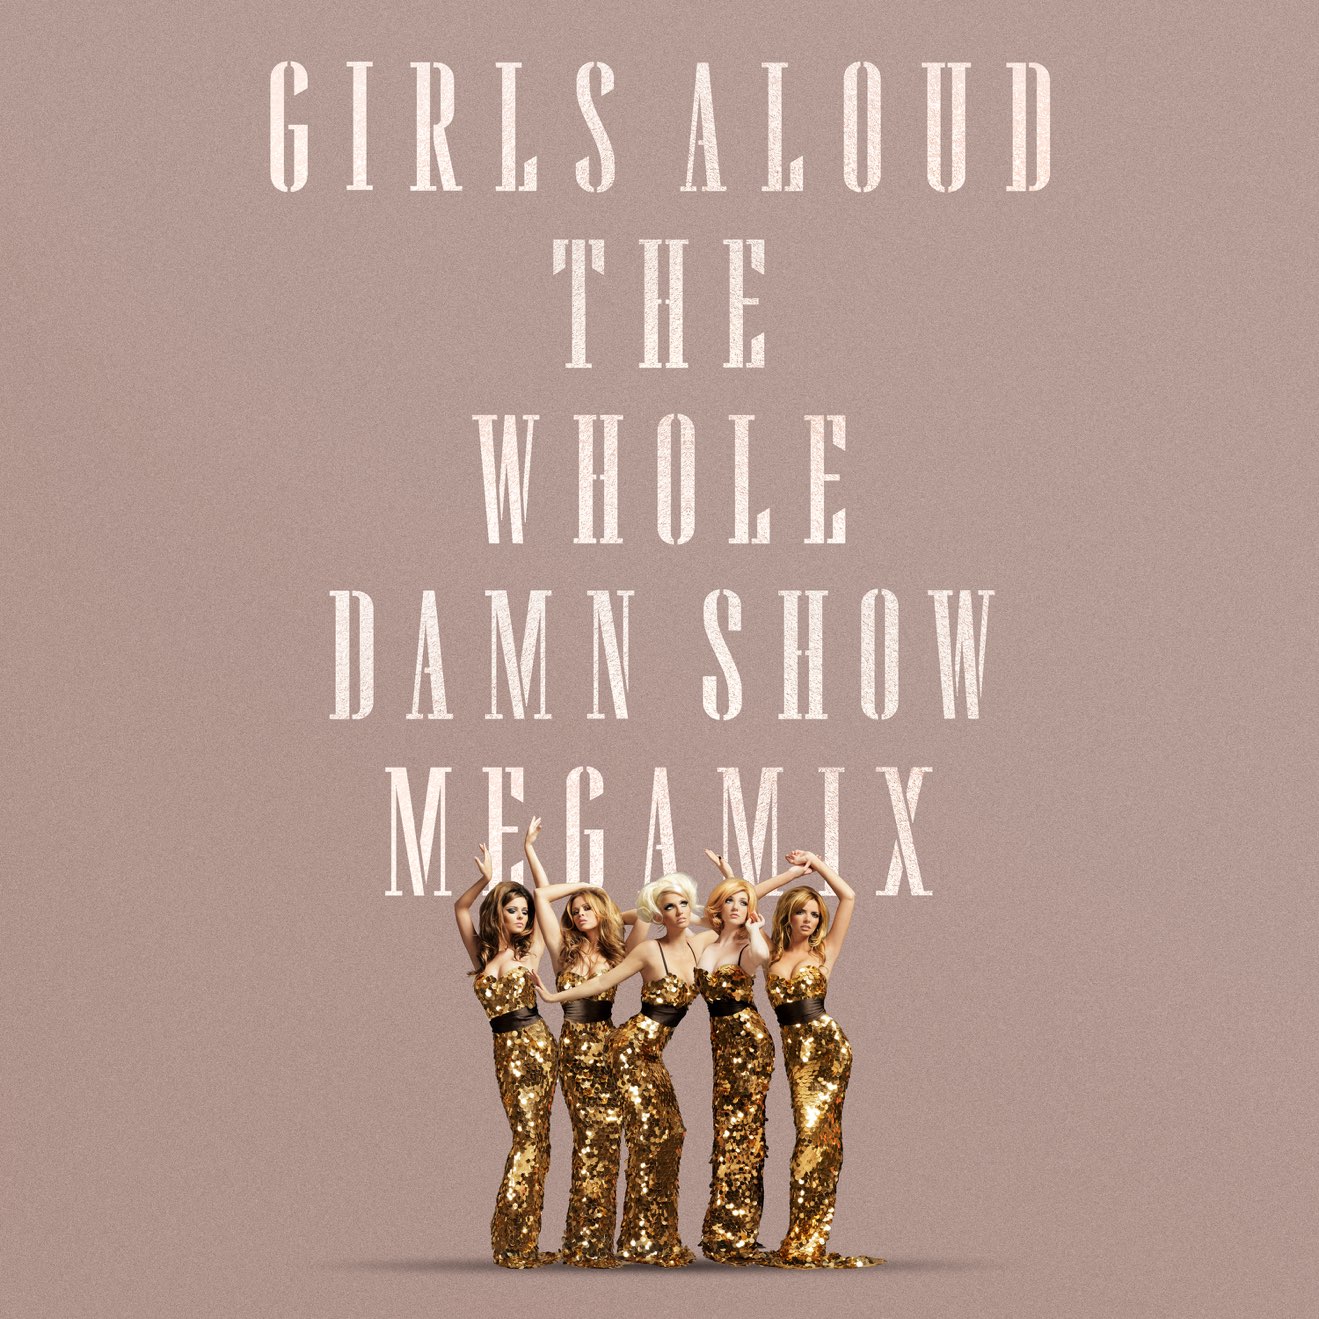 Girls Aloud – The Whole Damn Show Megamix (2024) [iTunes Match M4A]